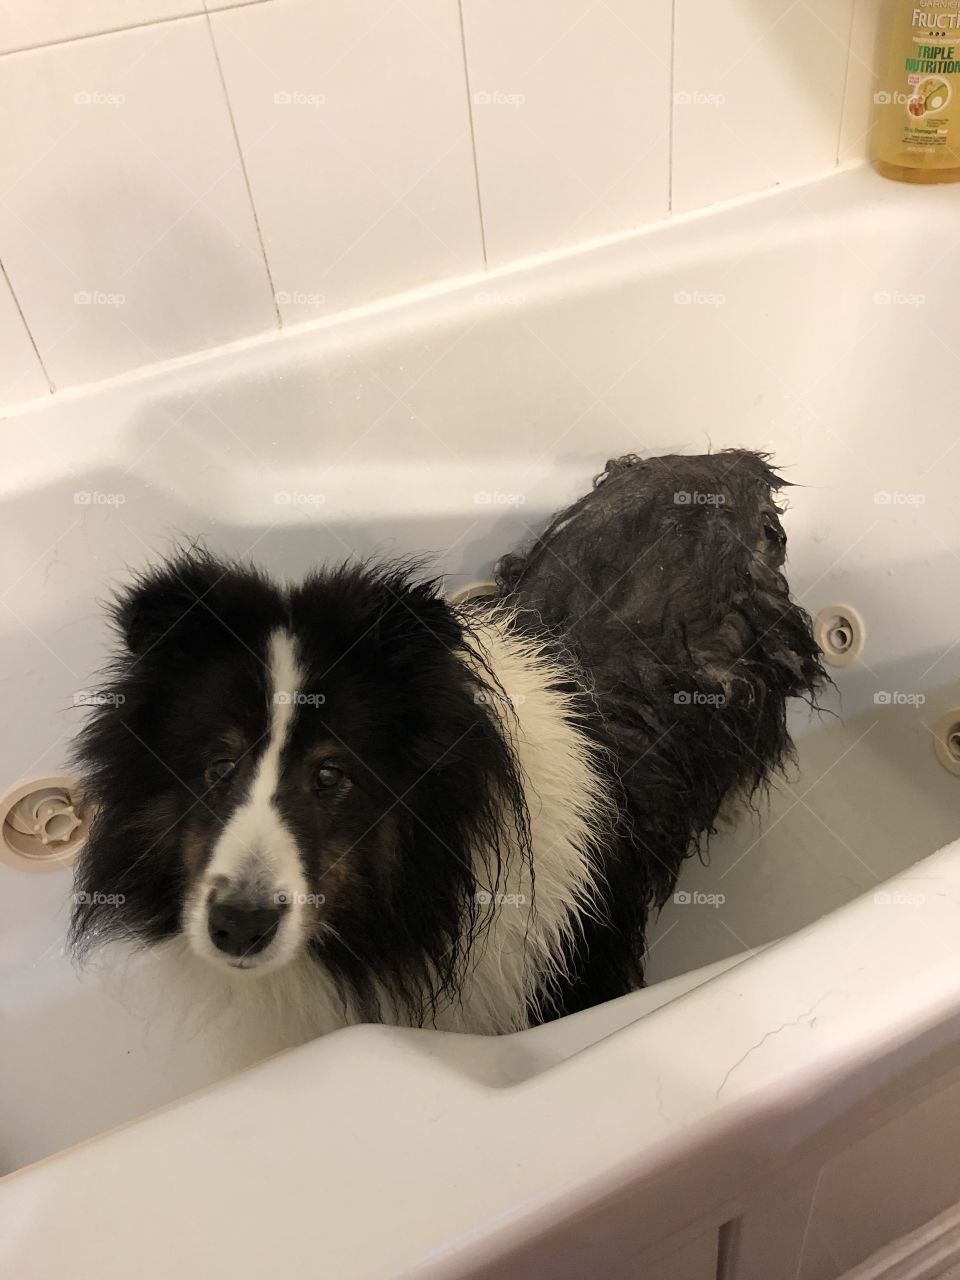 Lilo loves the bath!